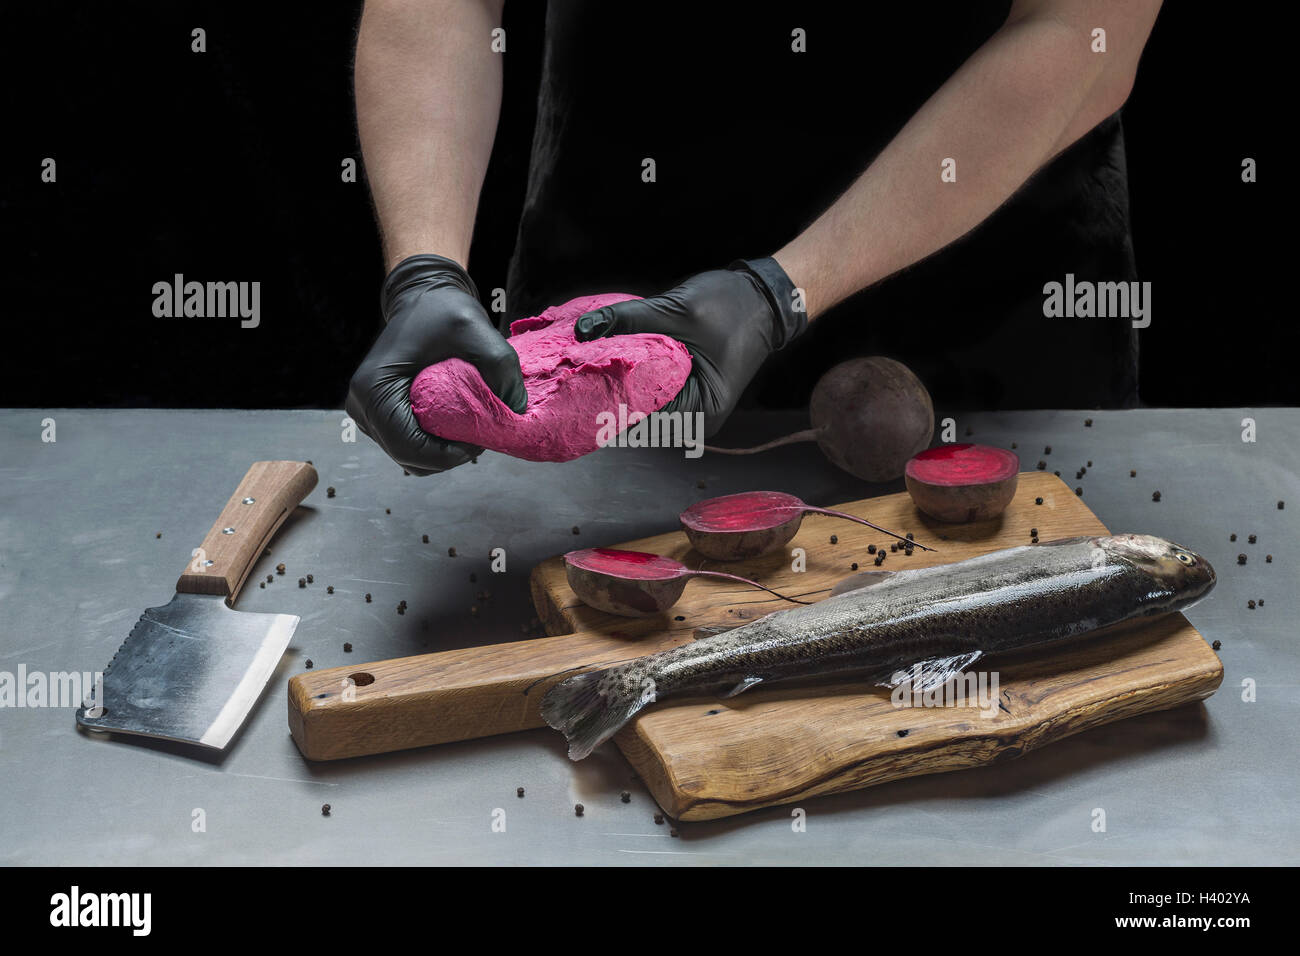 Mittelteil des Mannes rosa Teig zu kneten, rohem Fisch und rote Beete am Tisch Stockfoto